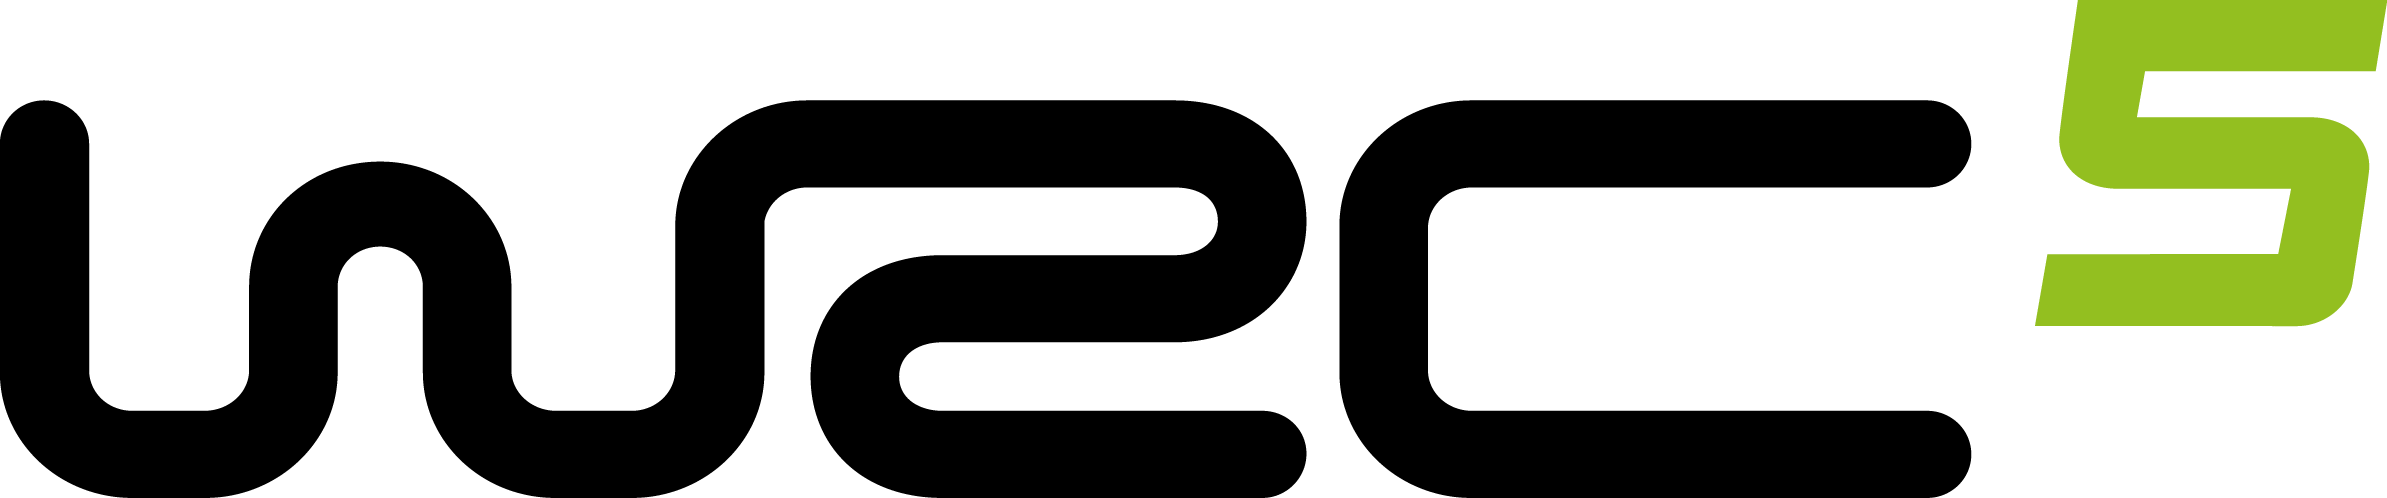 Wrc5 Logo Black Large - Wrc 5 Logo Png (2387x498)